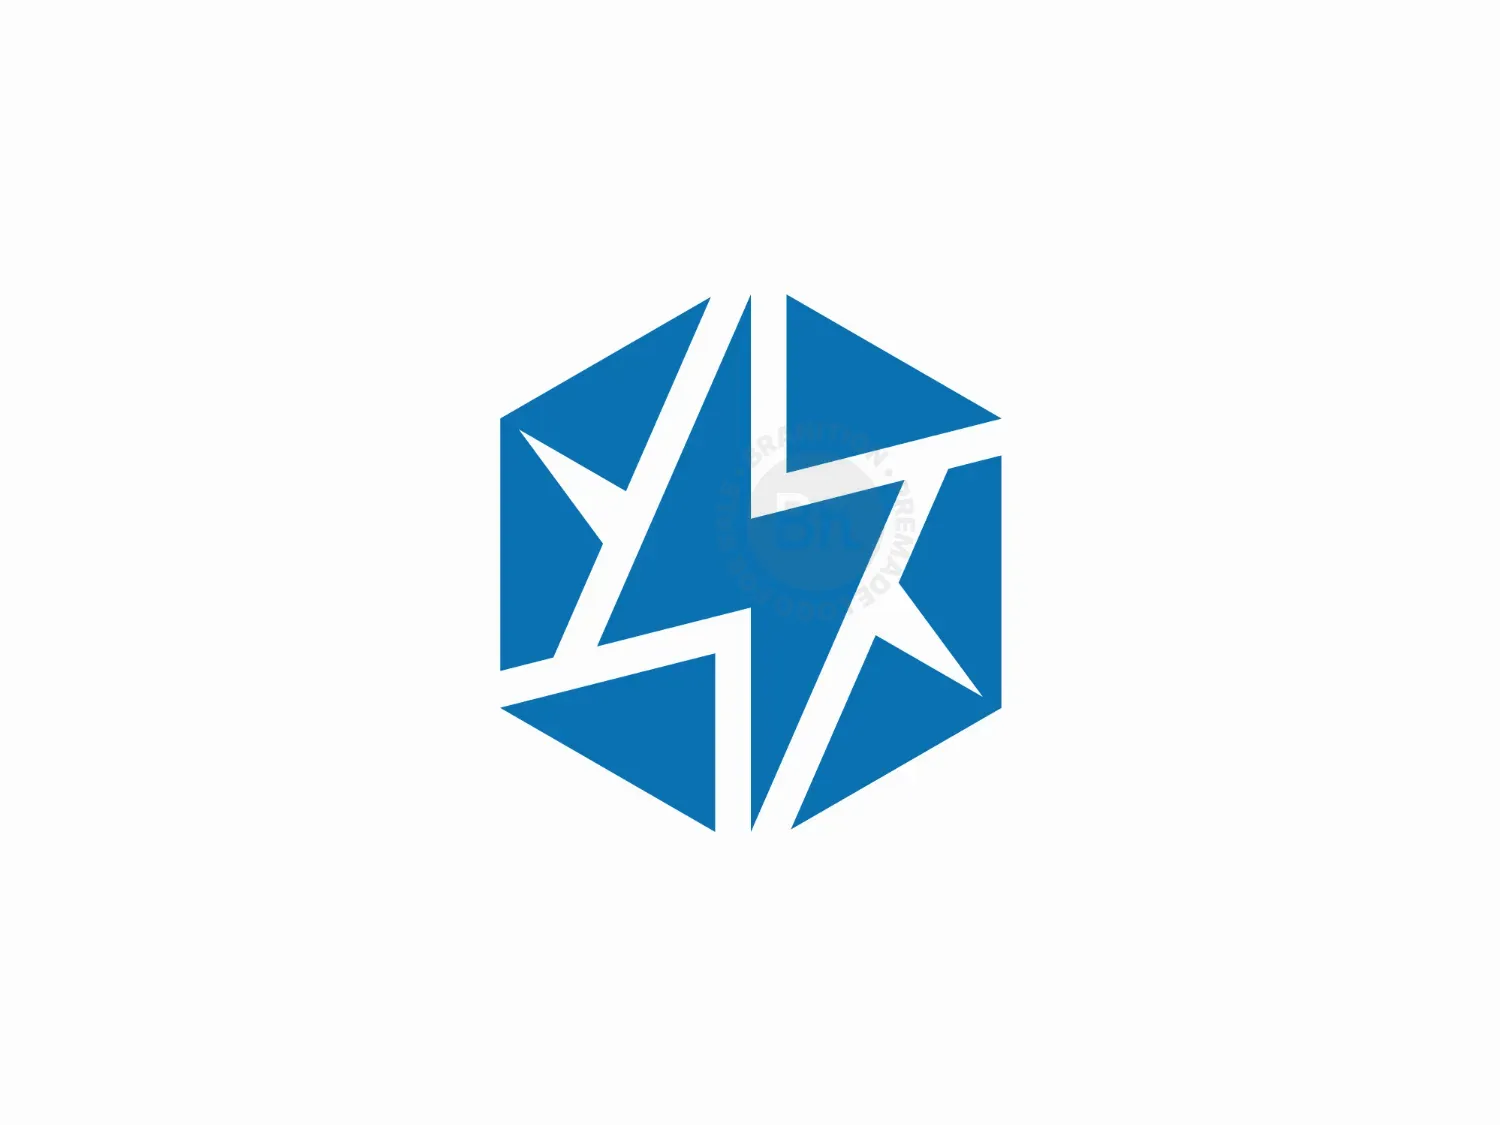 Hexagon Lightning Logo